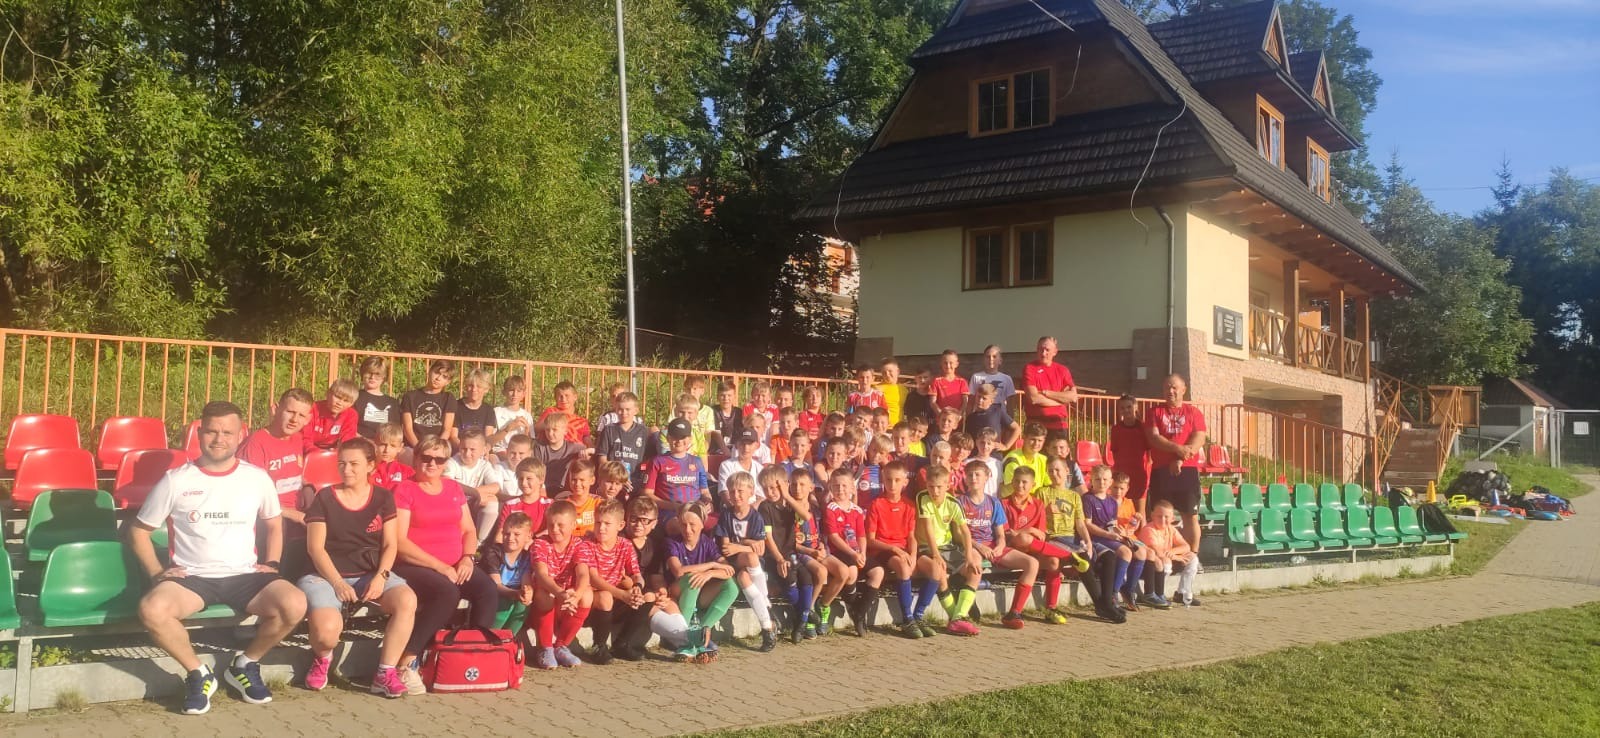 Fotografia przedstawia zawodników Akademii Piłki Nożnej podczas obozu w Białym Dunajcu.Zawodnicy wraz z trenerami siedzą na trybunach.